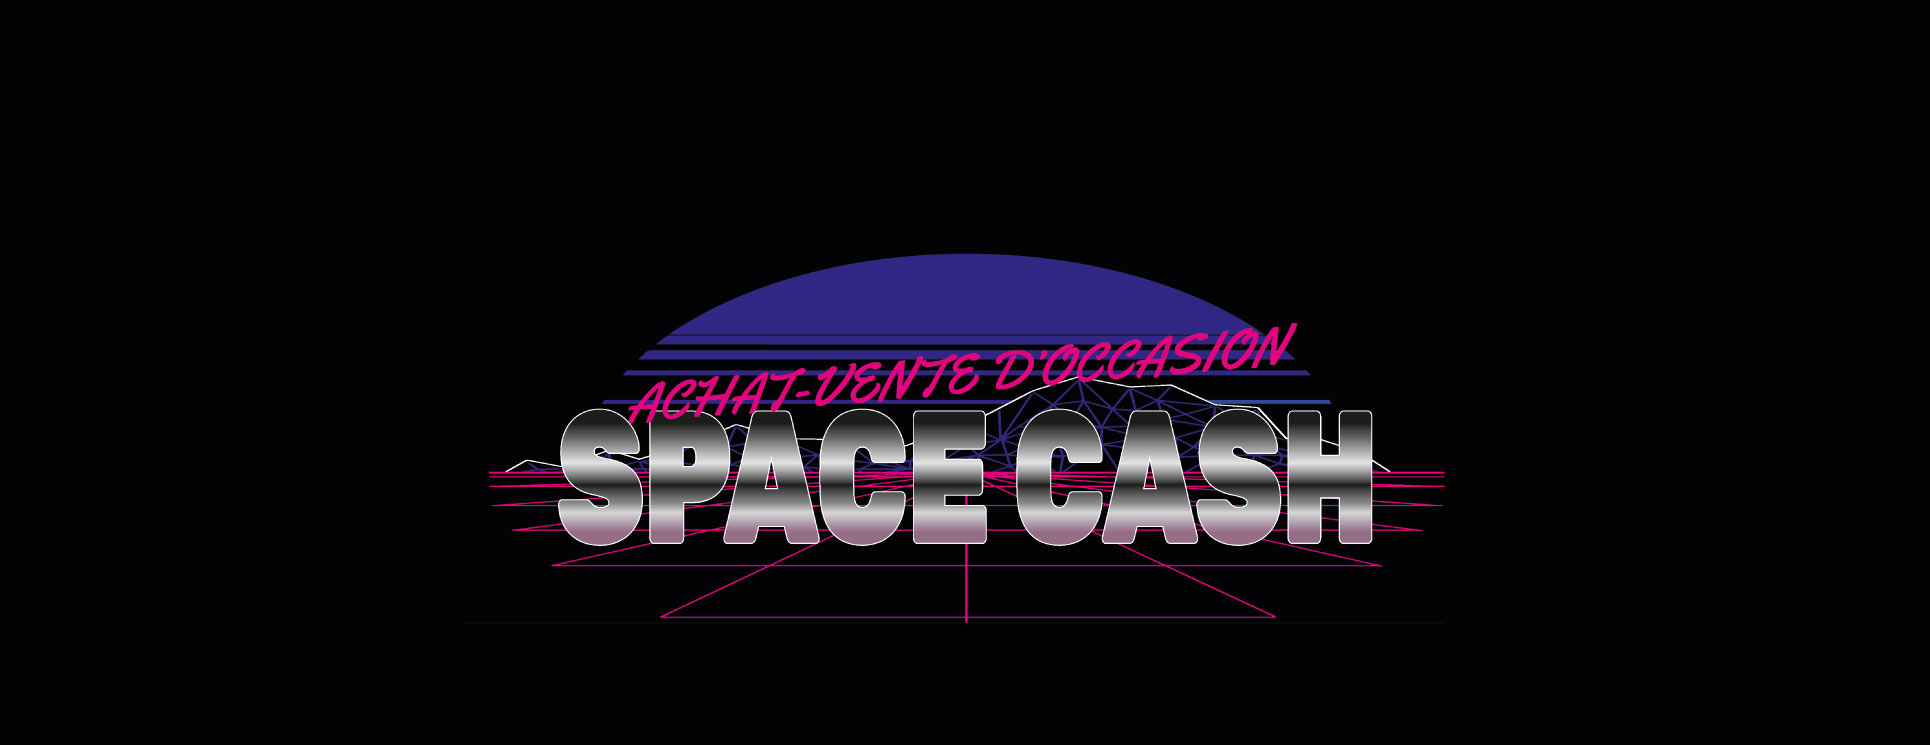 Logo SpaceCash magain achat et vente d'occasion retro, vintage, musique, informatique, jeu vidéo, rétro-gaming, téléphone, hifi, vintage, télévision, culturel, photo, optique, biache-st-vaast à proximité d'Arras, pas-de-calais